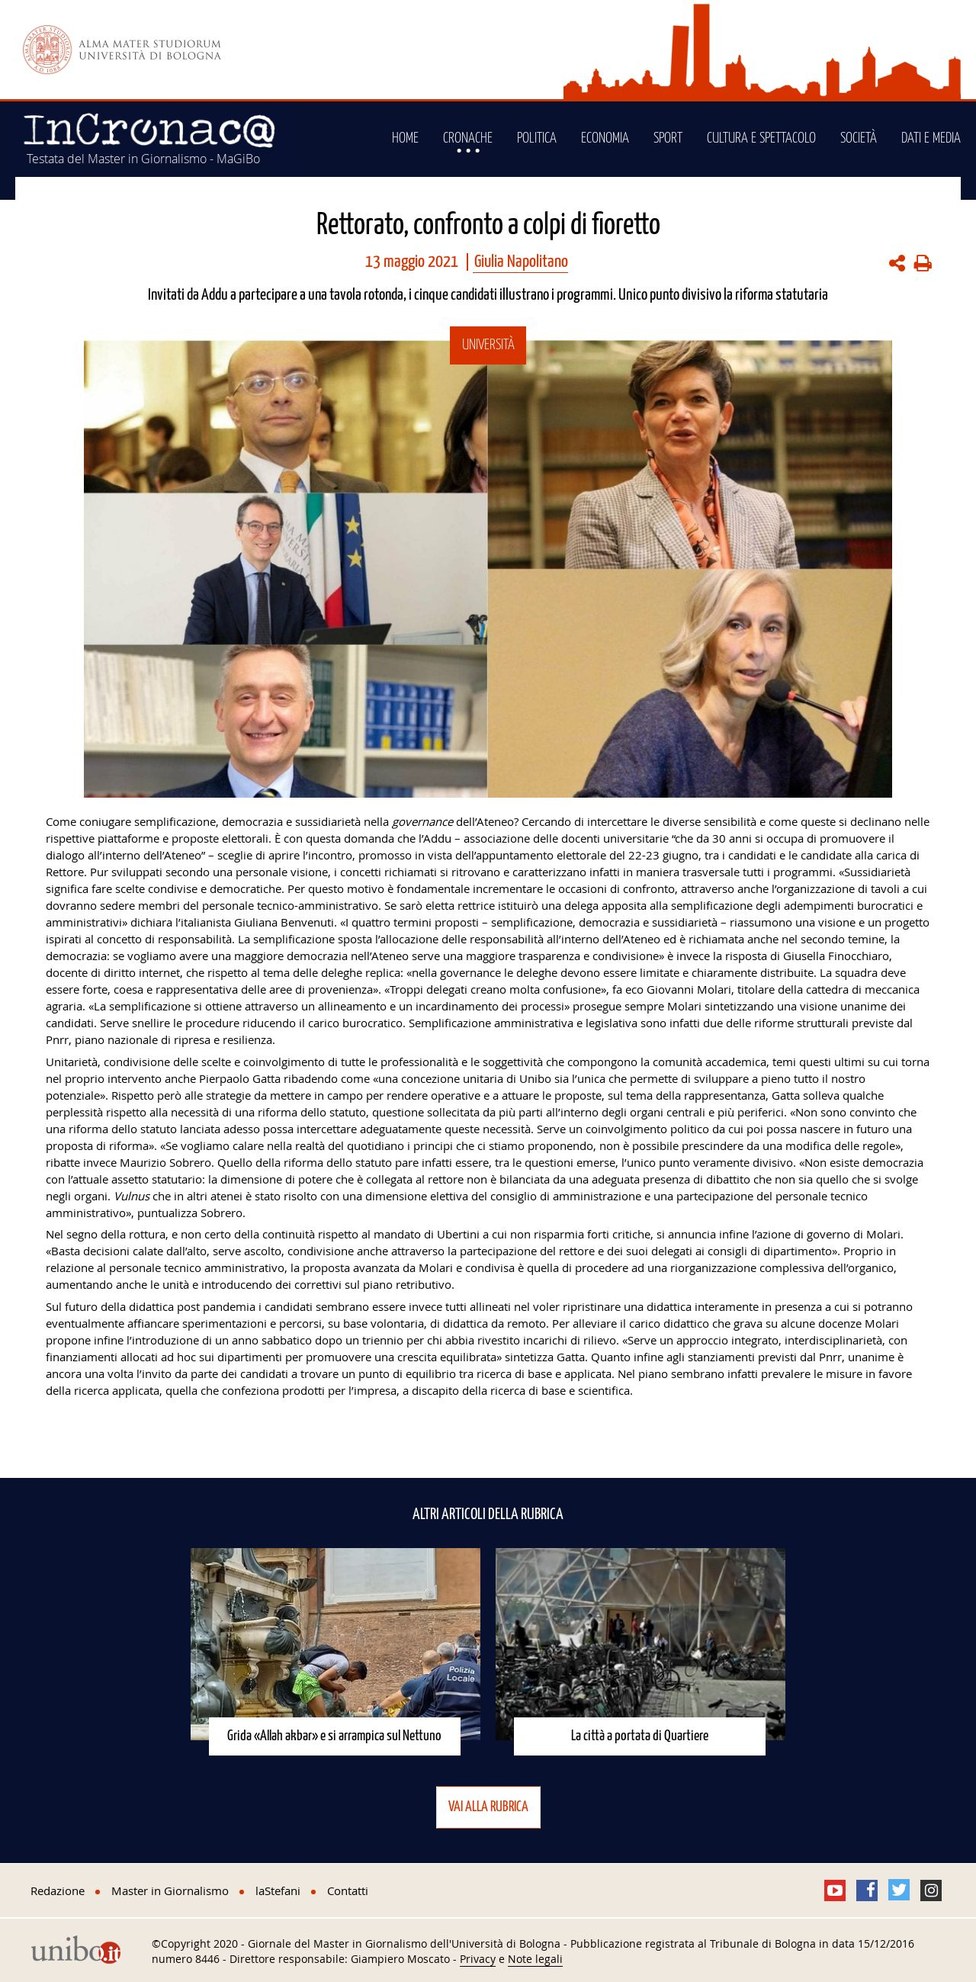 Articolo di Giulia Napolitano su Incronac@ del 13 maggio 2021, disponibile al link https://incronaca.unibo.it/archivio/2021/05/13/rettorato-confronto-a-colpi-di-fioretto